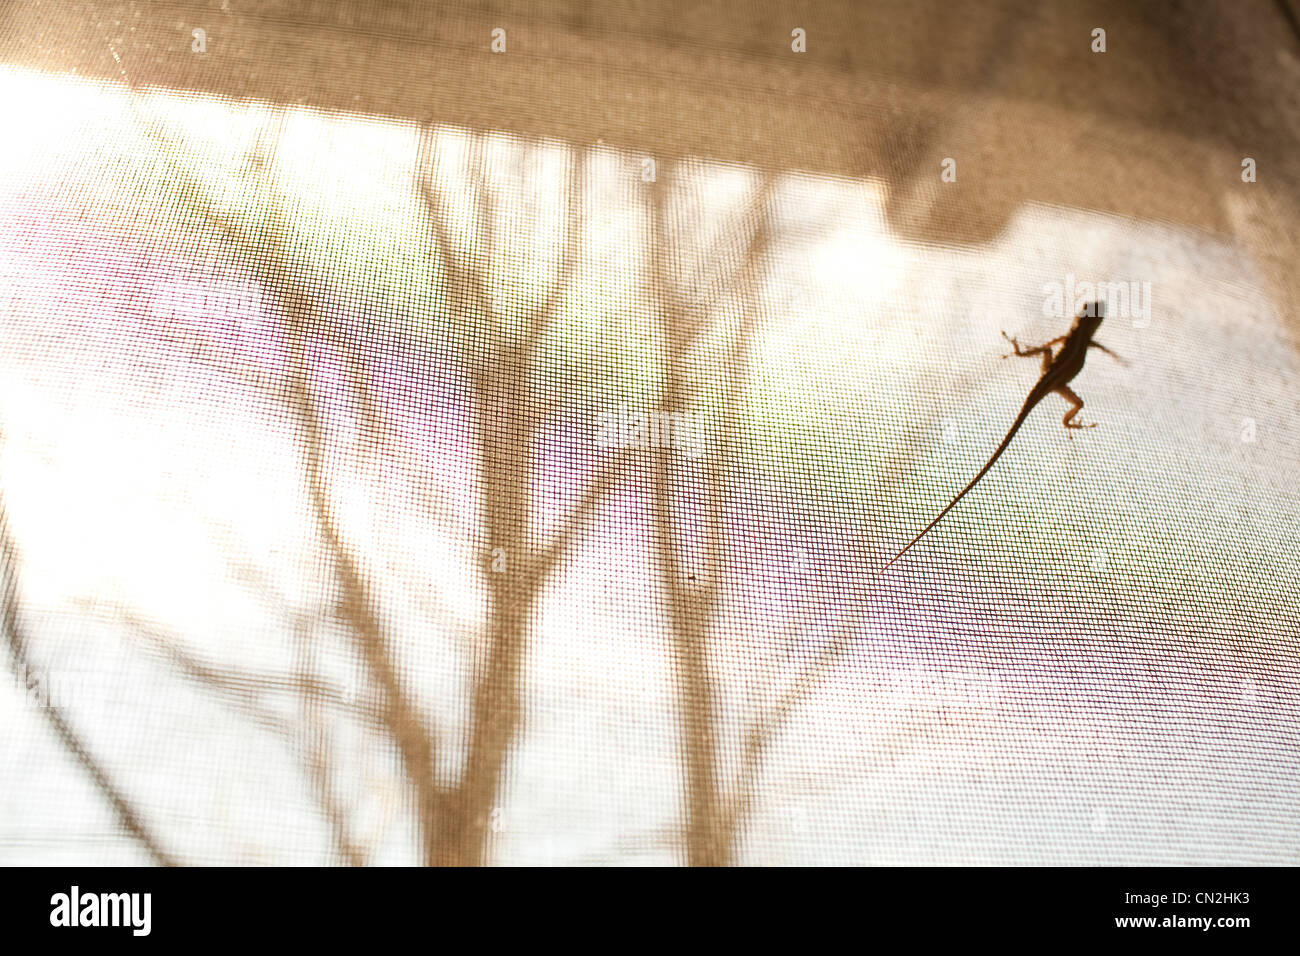 Lizard on window screen Stock Photo